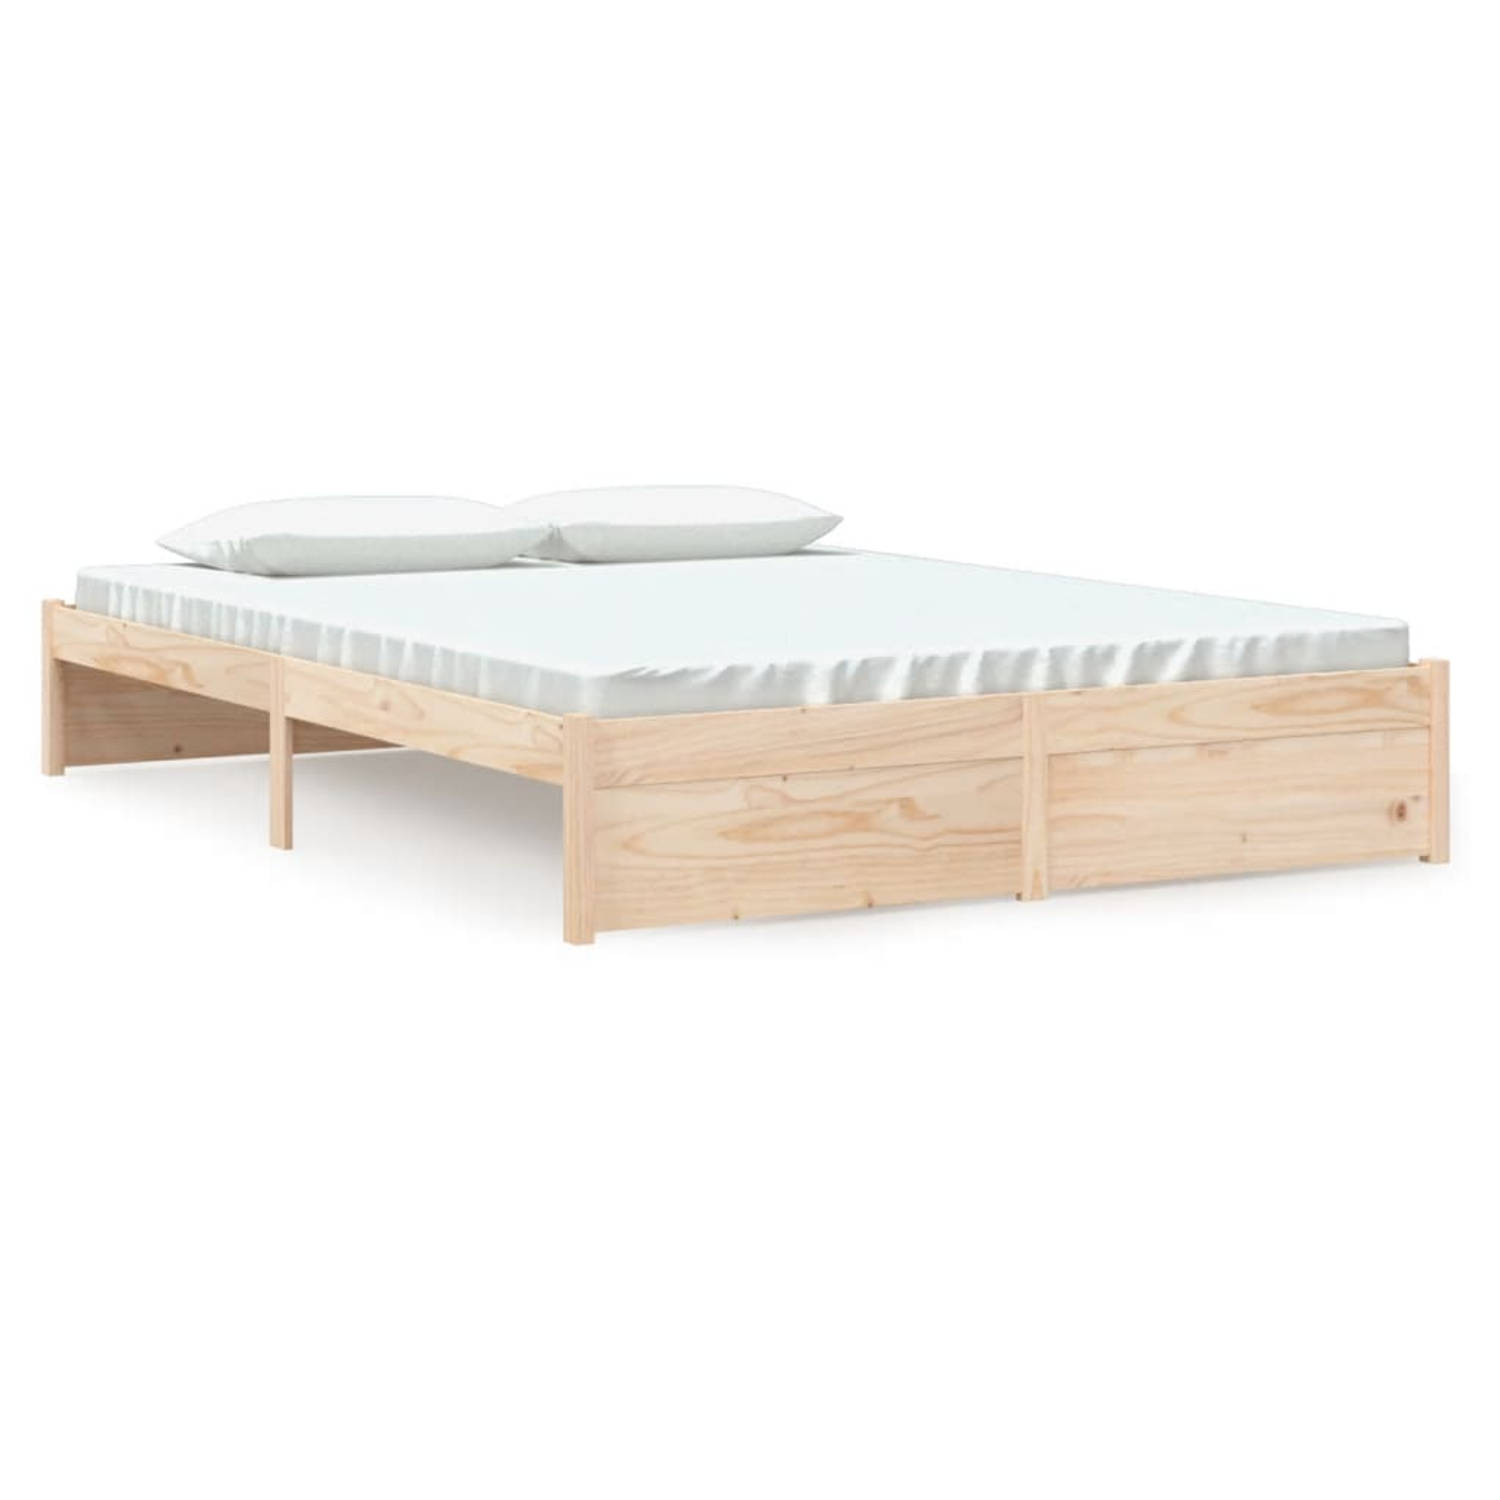 The Living Store Bedframe massief hout 160x200 cm - Bedframe - Bedframes - Bed - Bedbodem - Ledikant - Bed Frame - Massief Houten Bedframe - Slaapmeubel - Tweepersoonsbed - Bedden